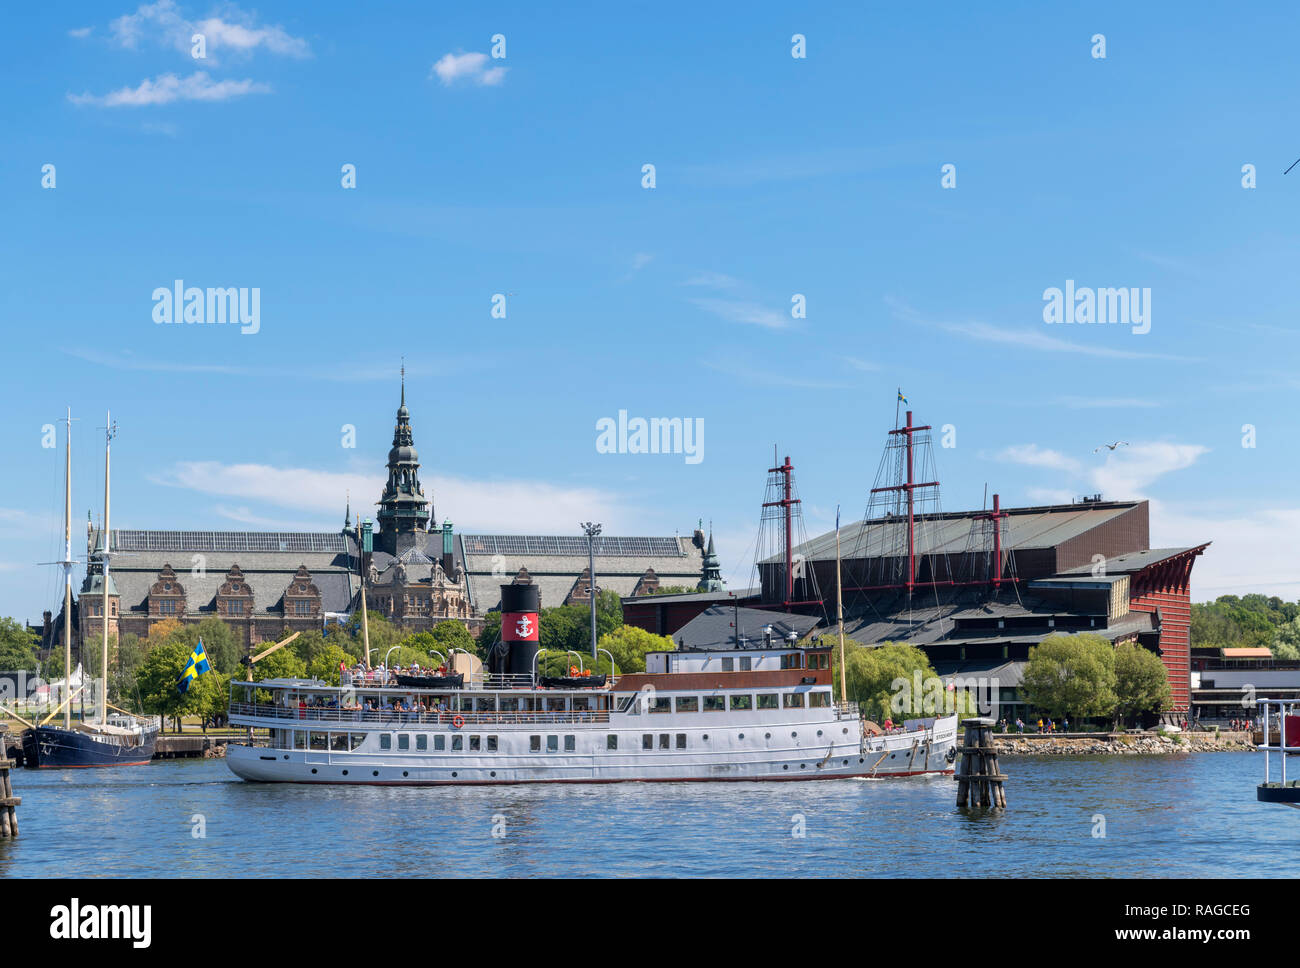 Le traversier local devant les pays nordiques et les musées Vasa vu de Skeppsholmen, Stockholm, Suède Banque D'Images